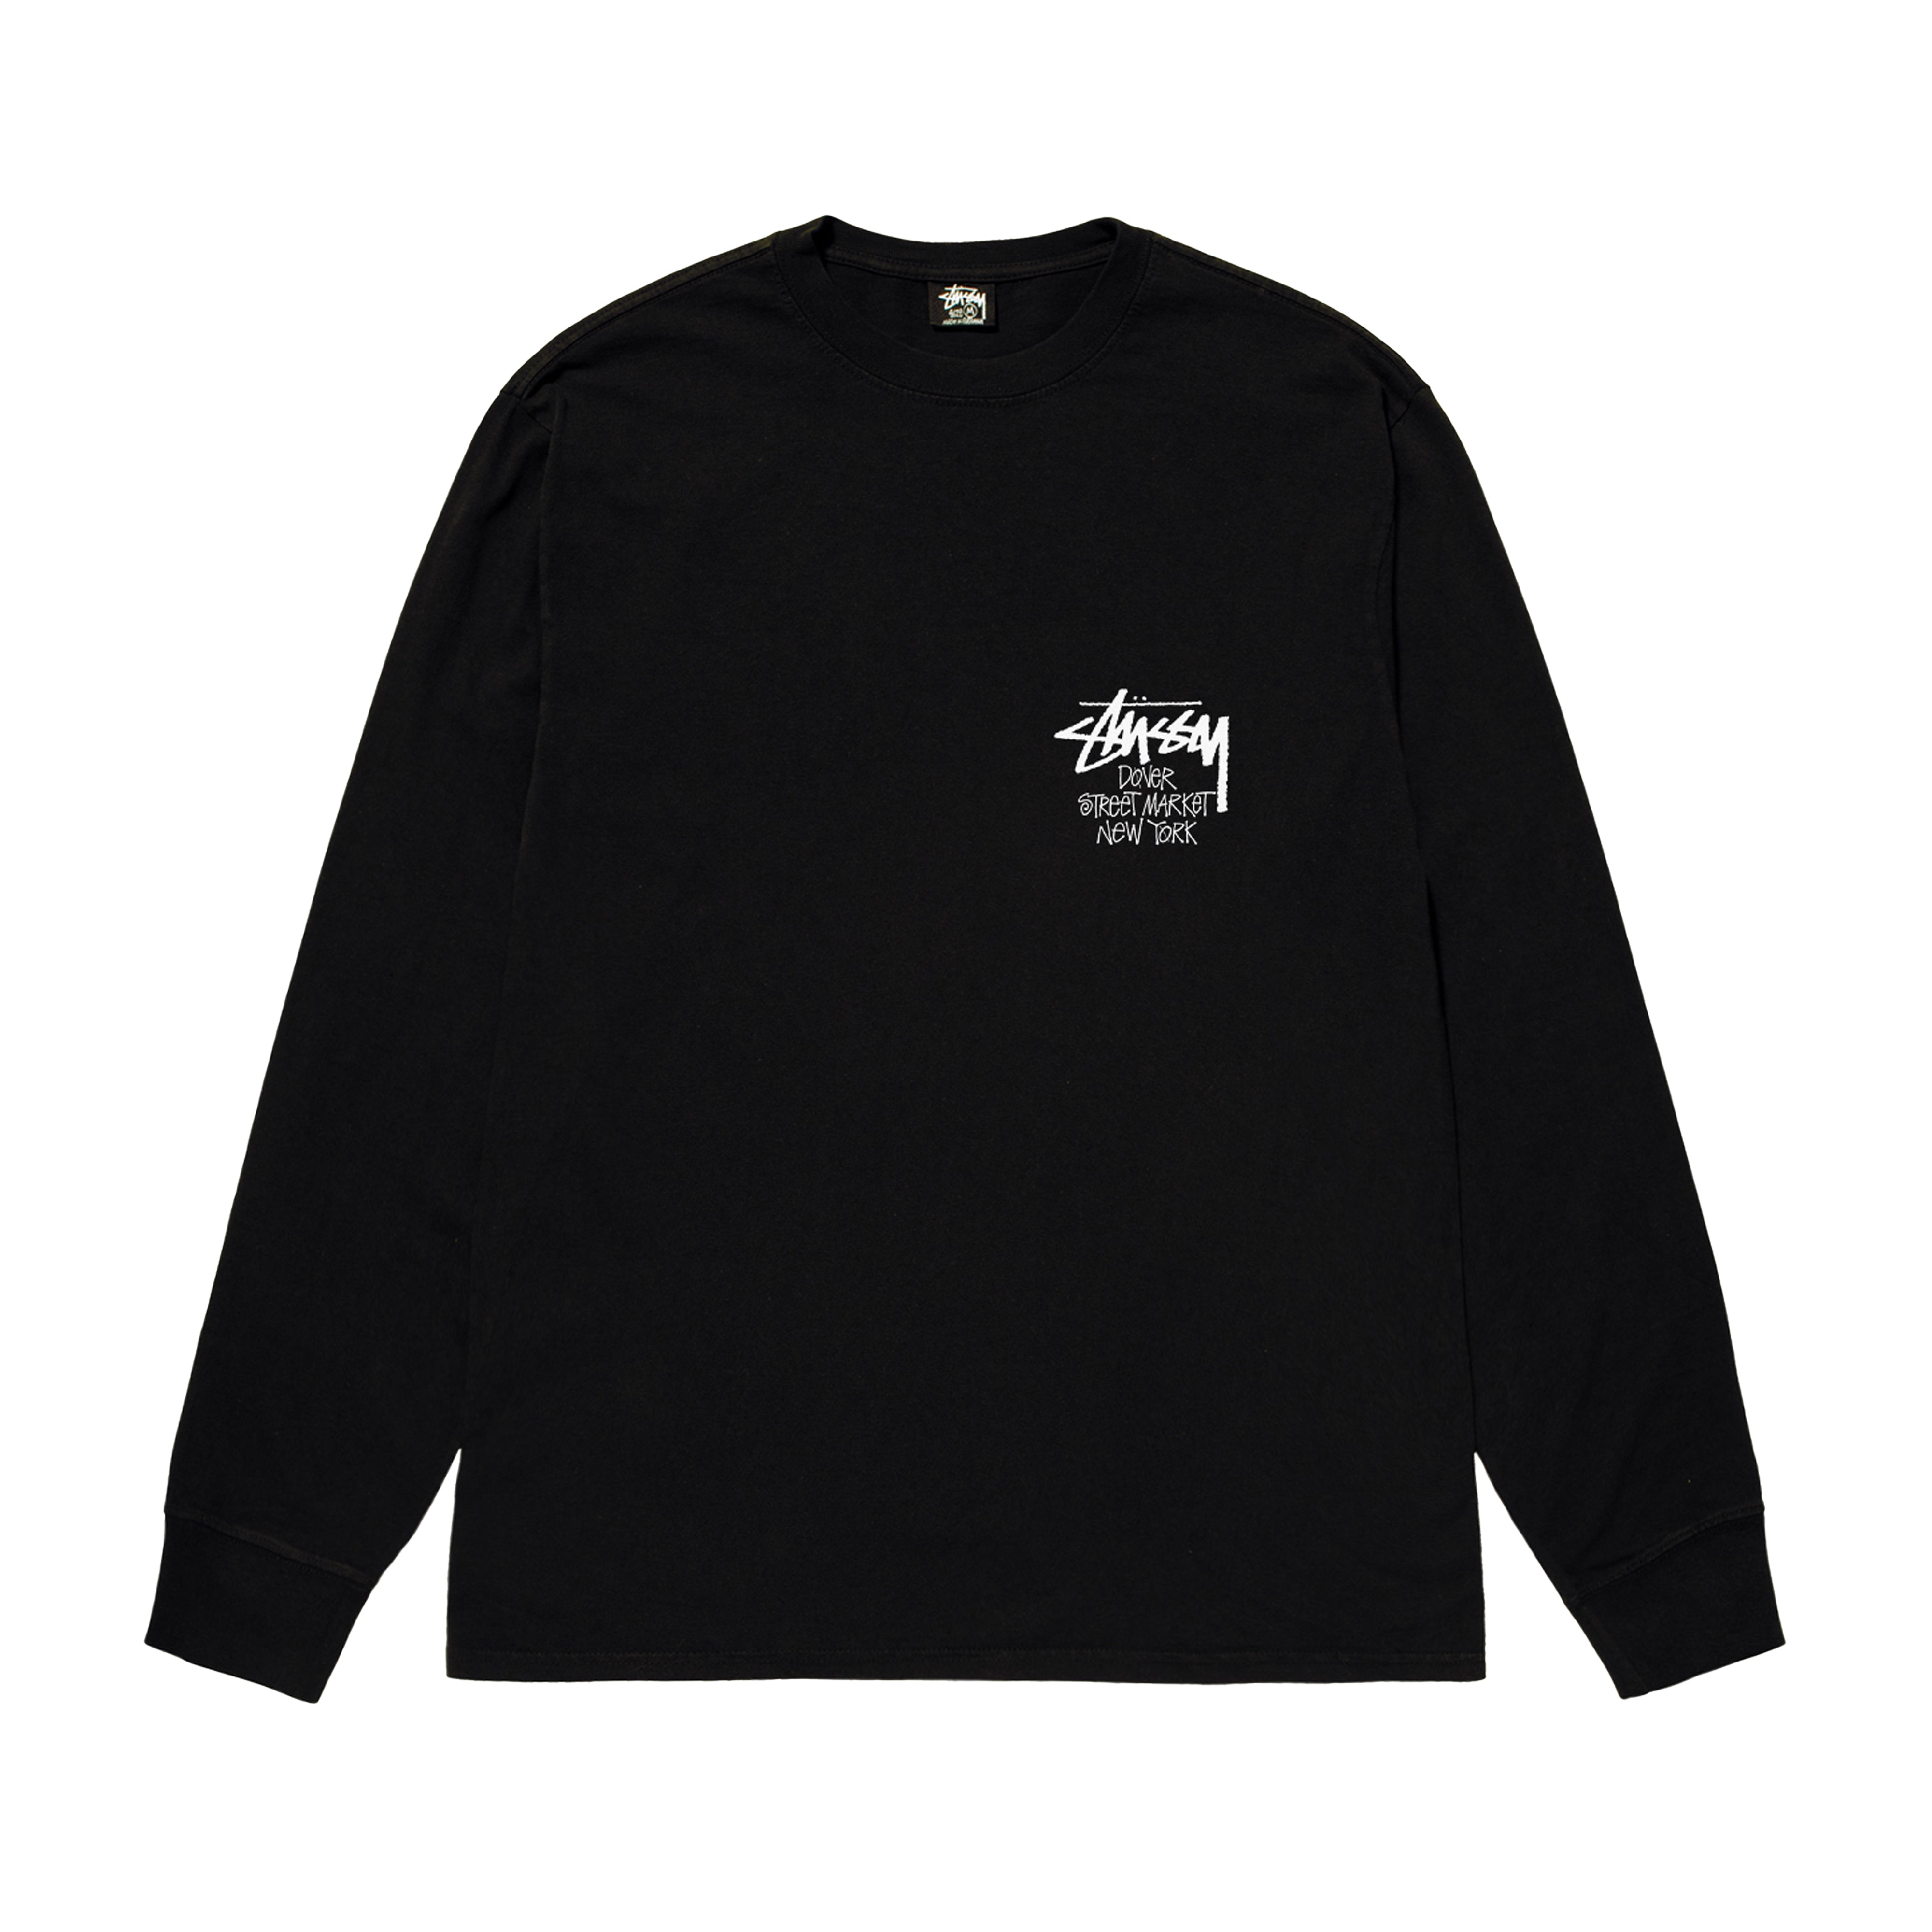 Stüssy - Men's DSM New York Long Sleeve T-Shirt - (Black) – DSMNY 